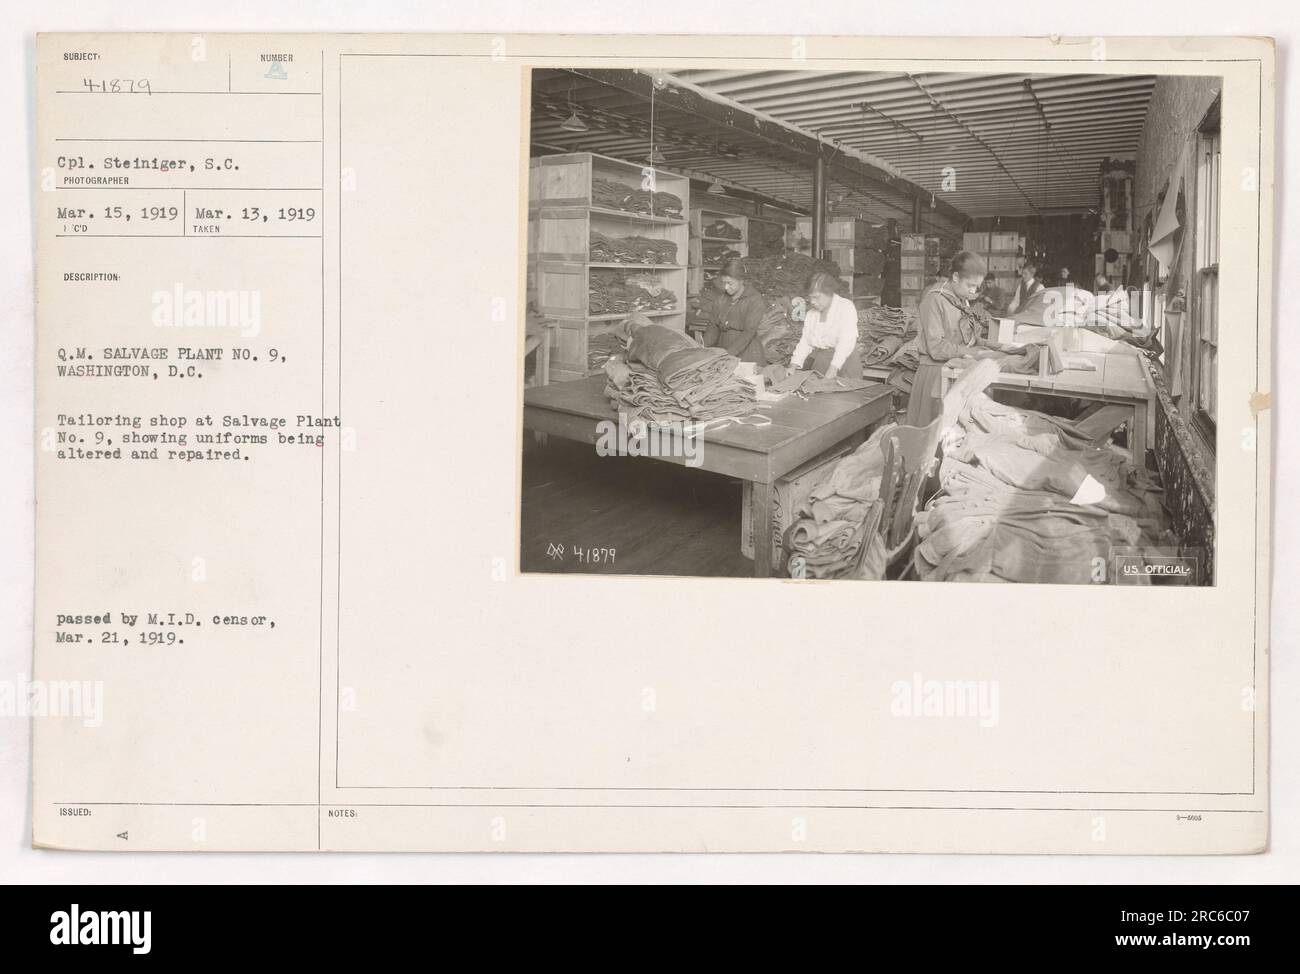 Didascalia: 'CPL. Steiniger, S.C., è stato visto in un negozio di sartoria a Salvage Plant No. 9, Washington, D.C., il 13 marzo 1919. Il negozio è attivamente coinvolto nell'alterazione e nella riparazione delle uniformi per il personale militare. Questa fotografia, scattata da un fotografo ufficiale degli Stati Uniti, è stata autorizzata per la pubblicazione da parte del M.I.D. Censor il 21 marzo 1919." Foto Stock